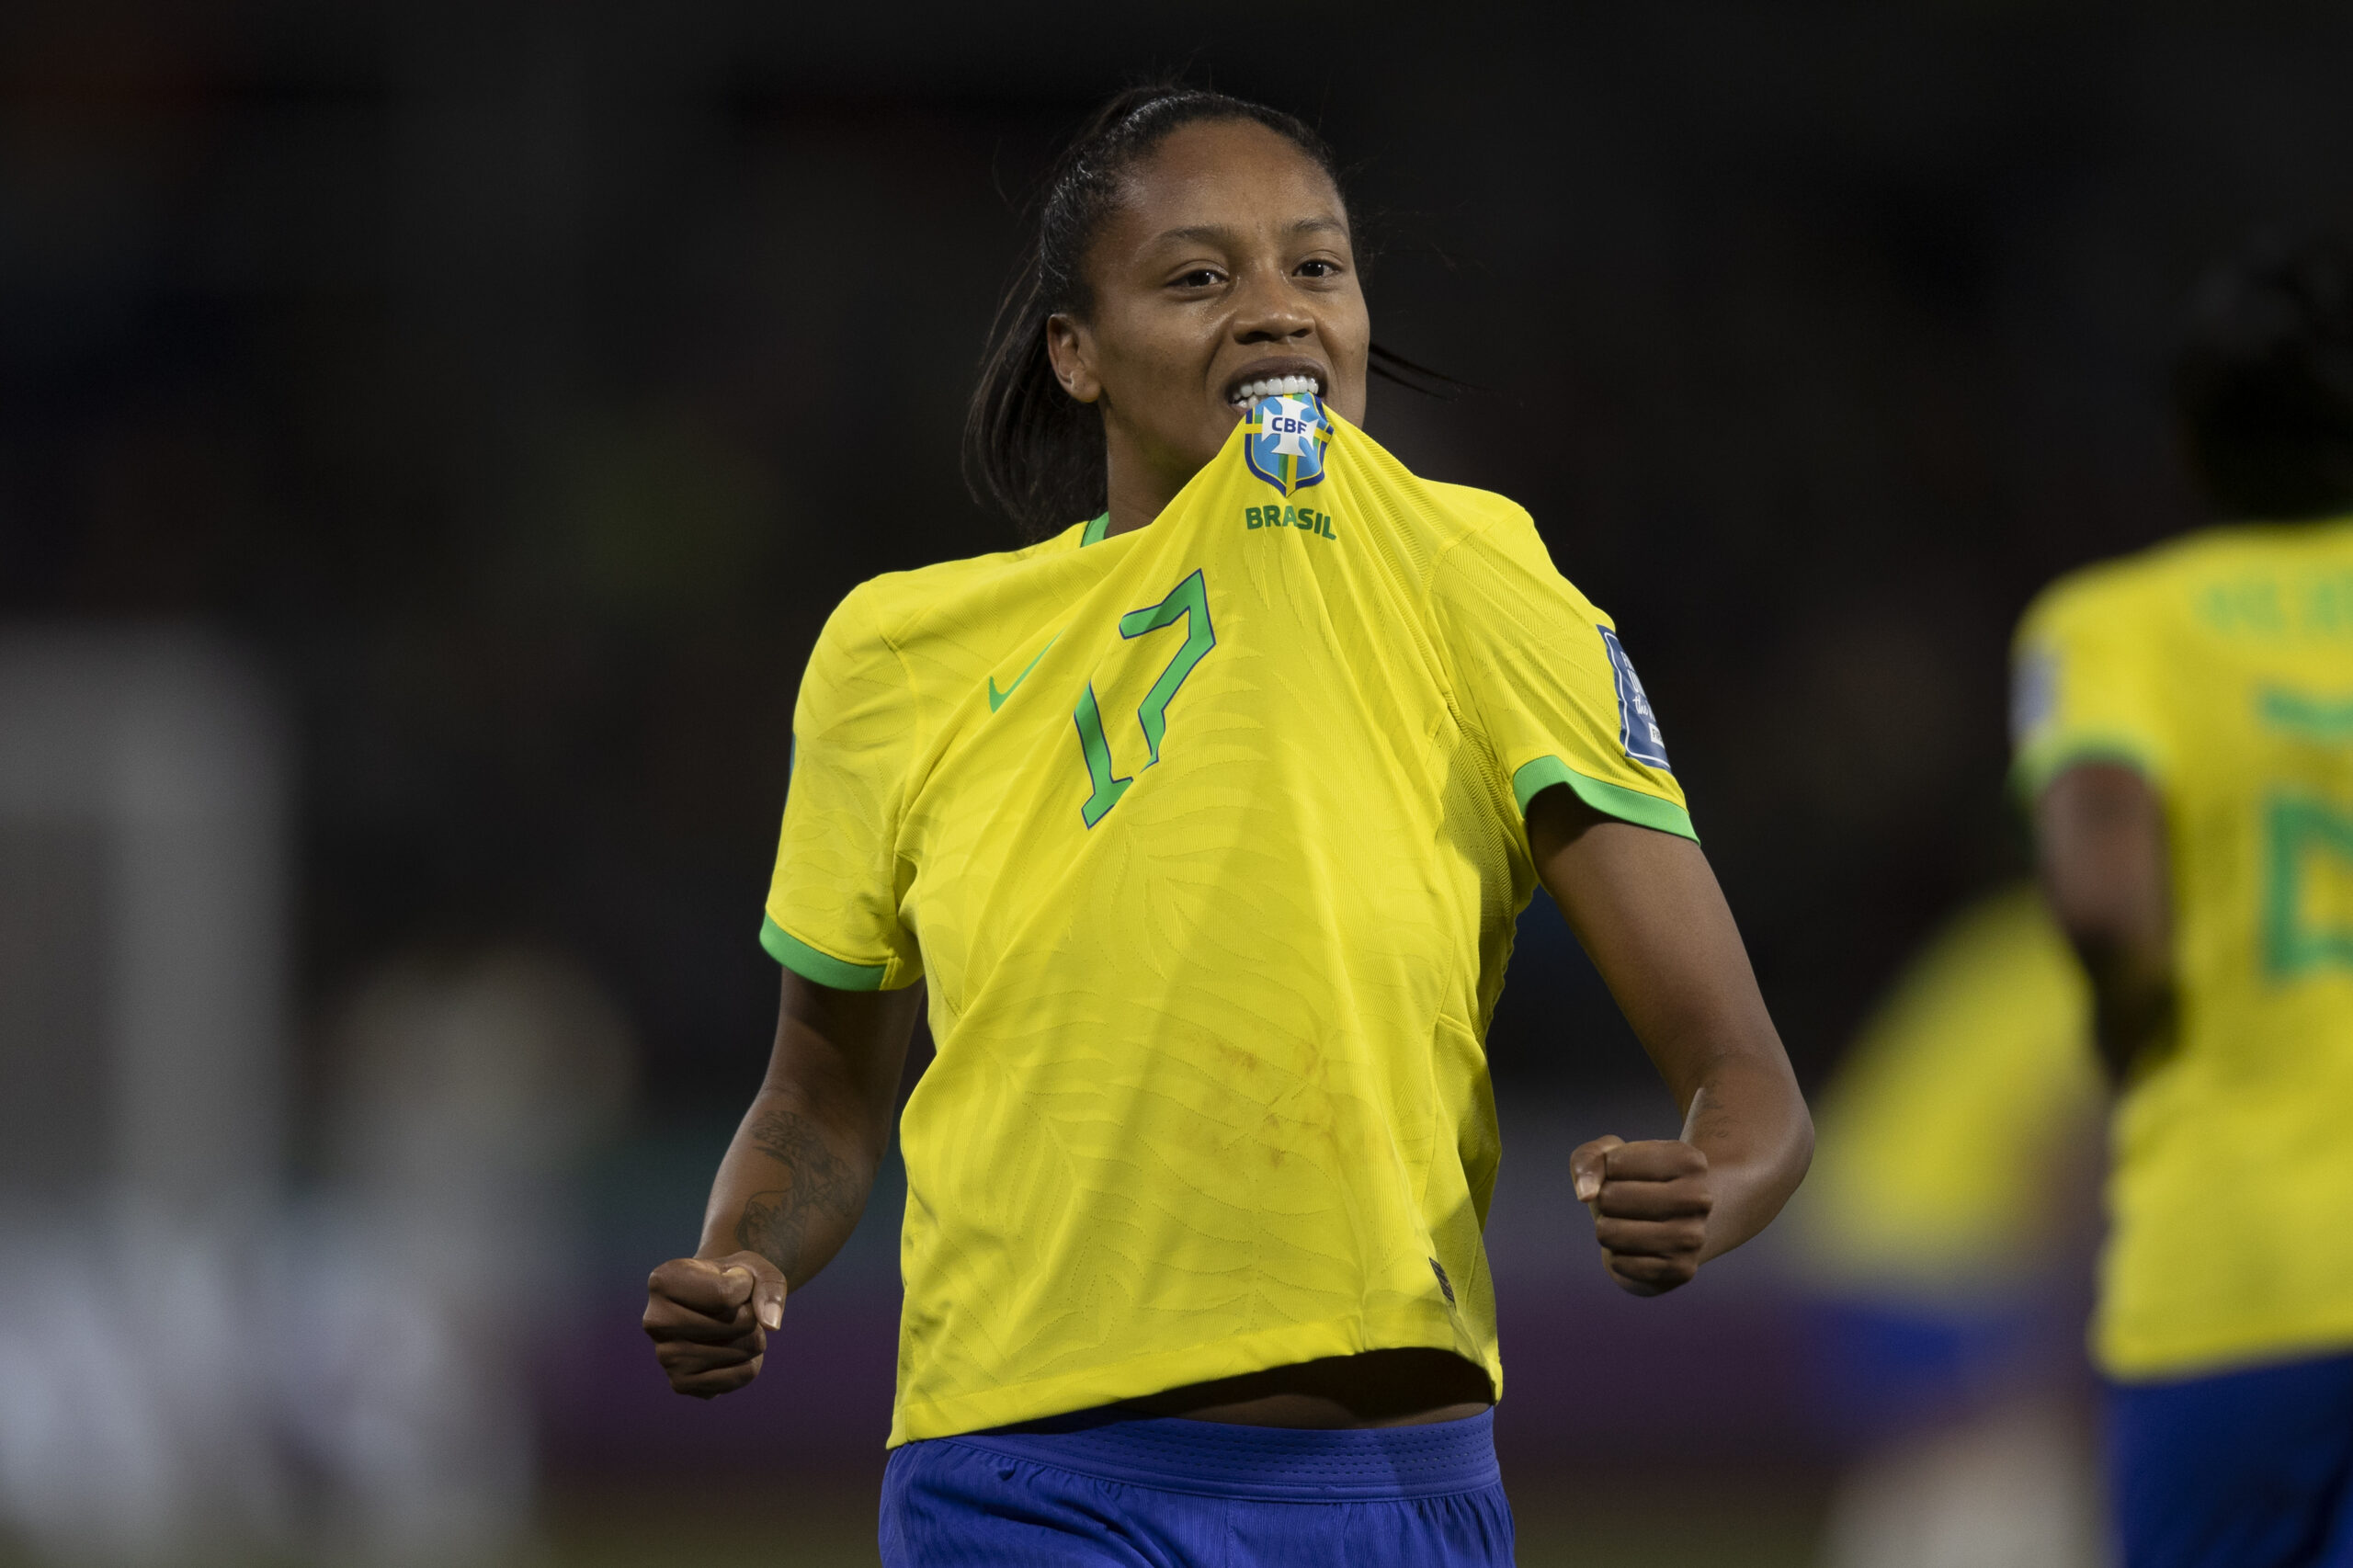 Brasil x França: como assistir ao jogo da Copa Feminina 2023 na CazéTV